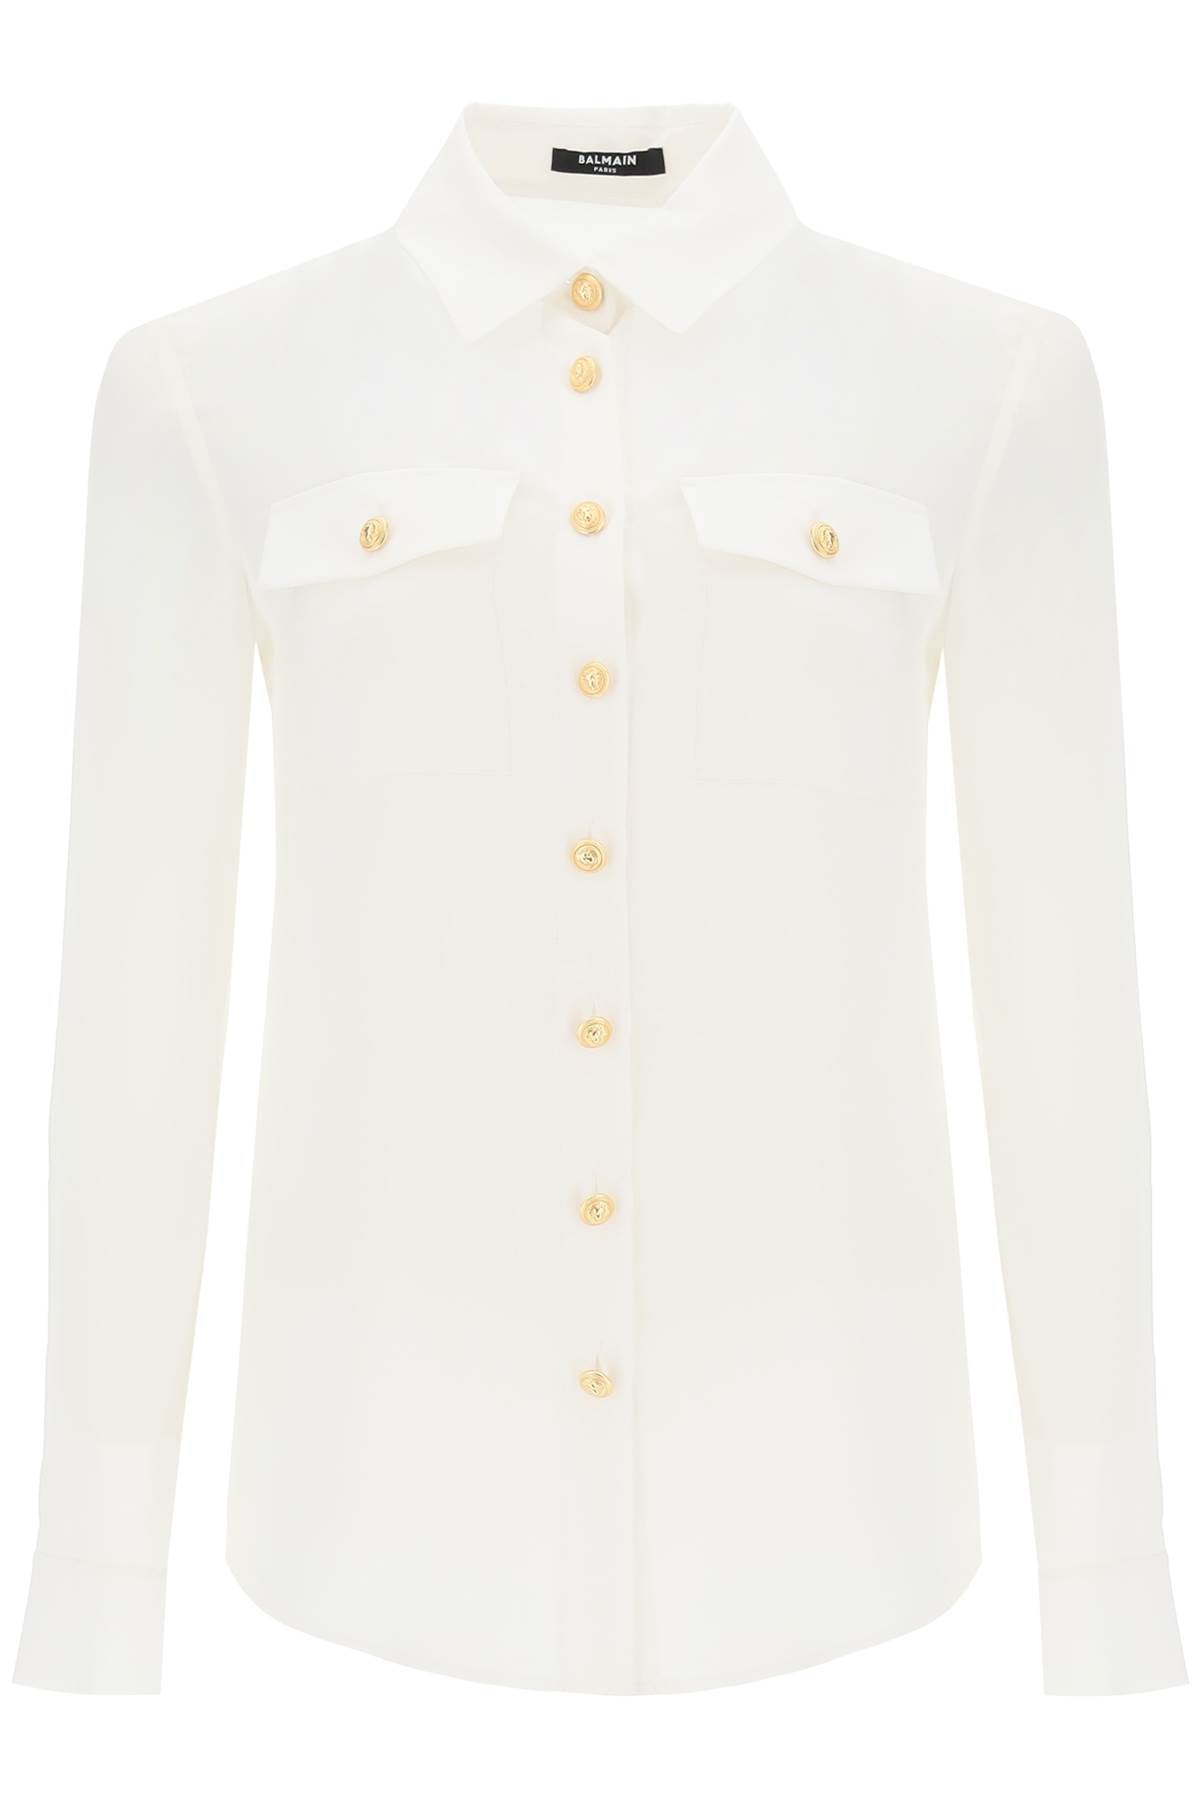 FW23女装白色真丝衬衫，两口袋，扣子式